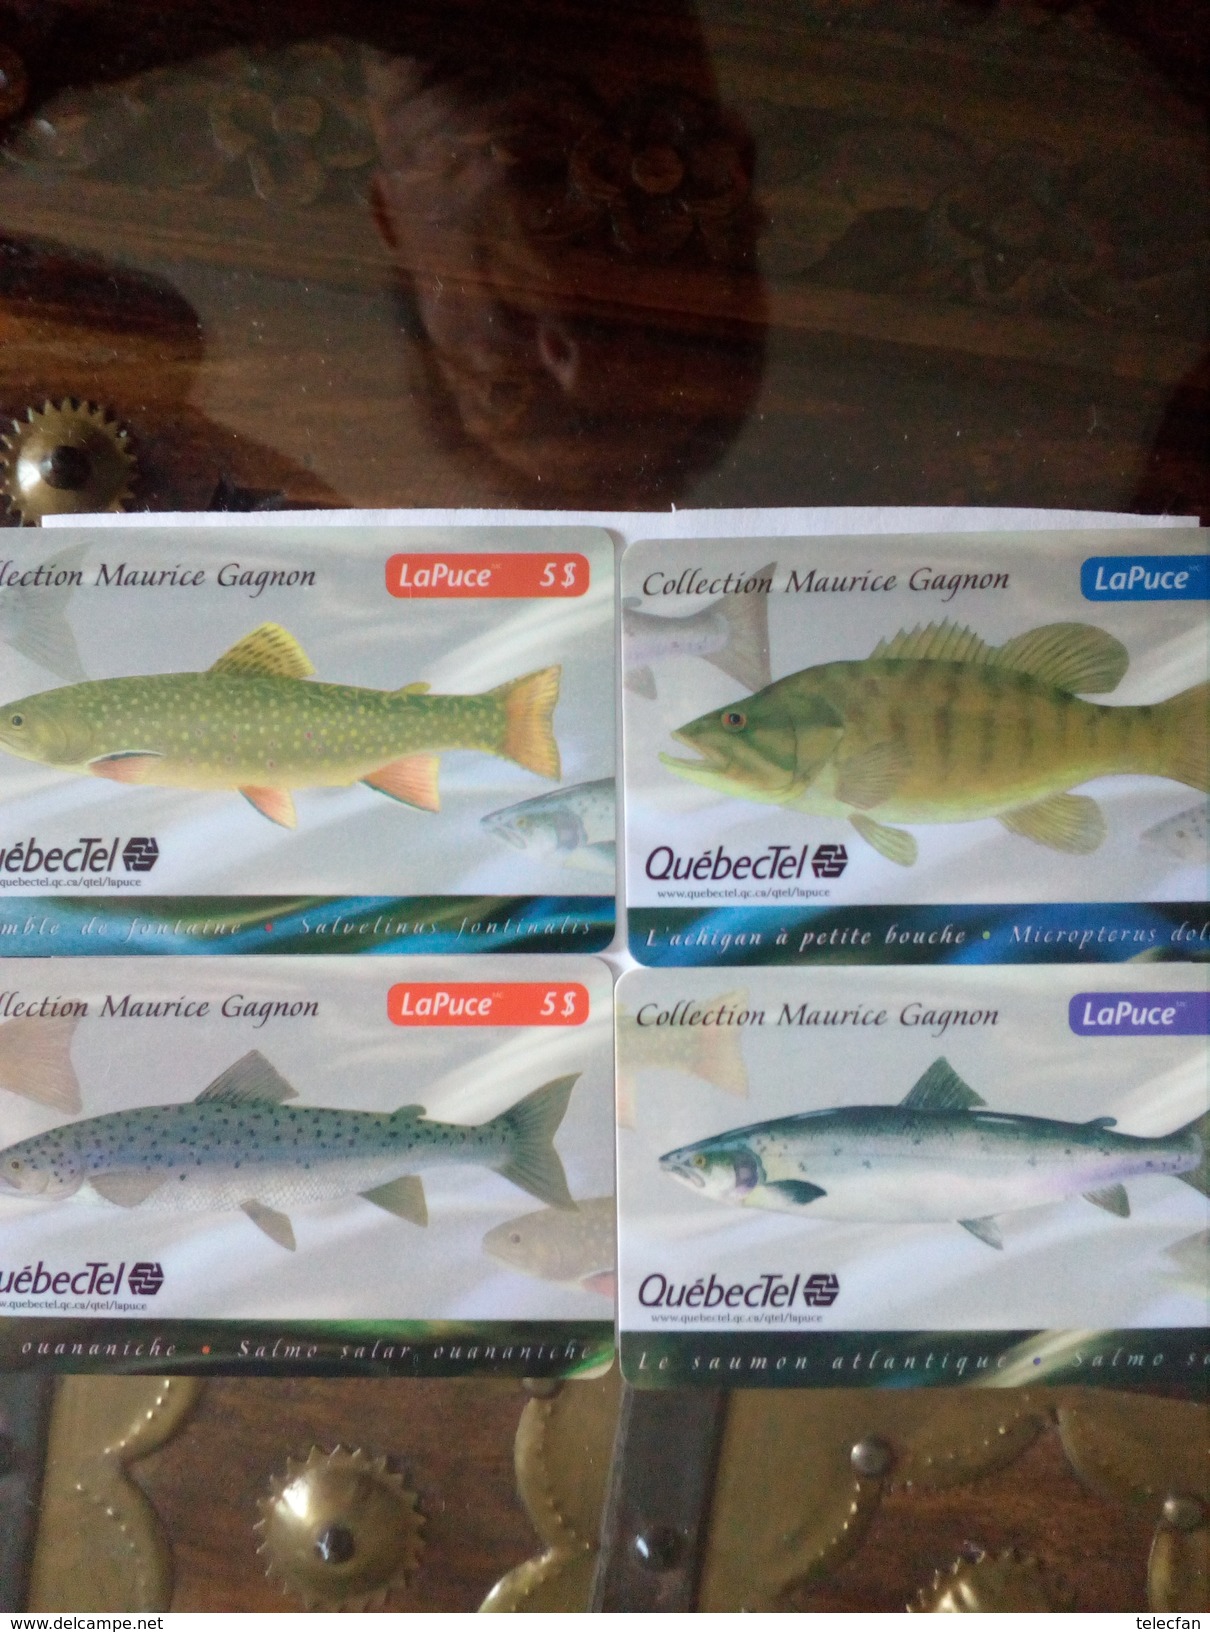 CANADA SERIE SET 4 CARDS POISSONS FISH 330 EX NEUVES MINTS QUEBECTEL Q10083 Q10084 Q10085 Q10086 - Canada